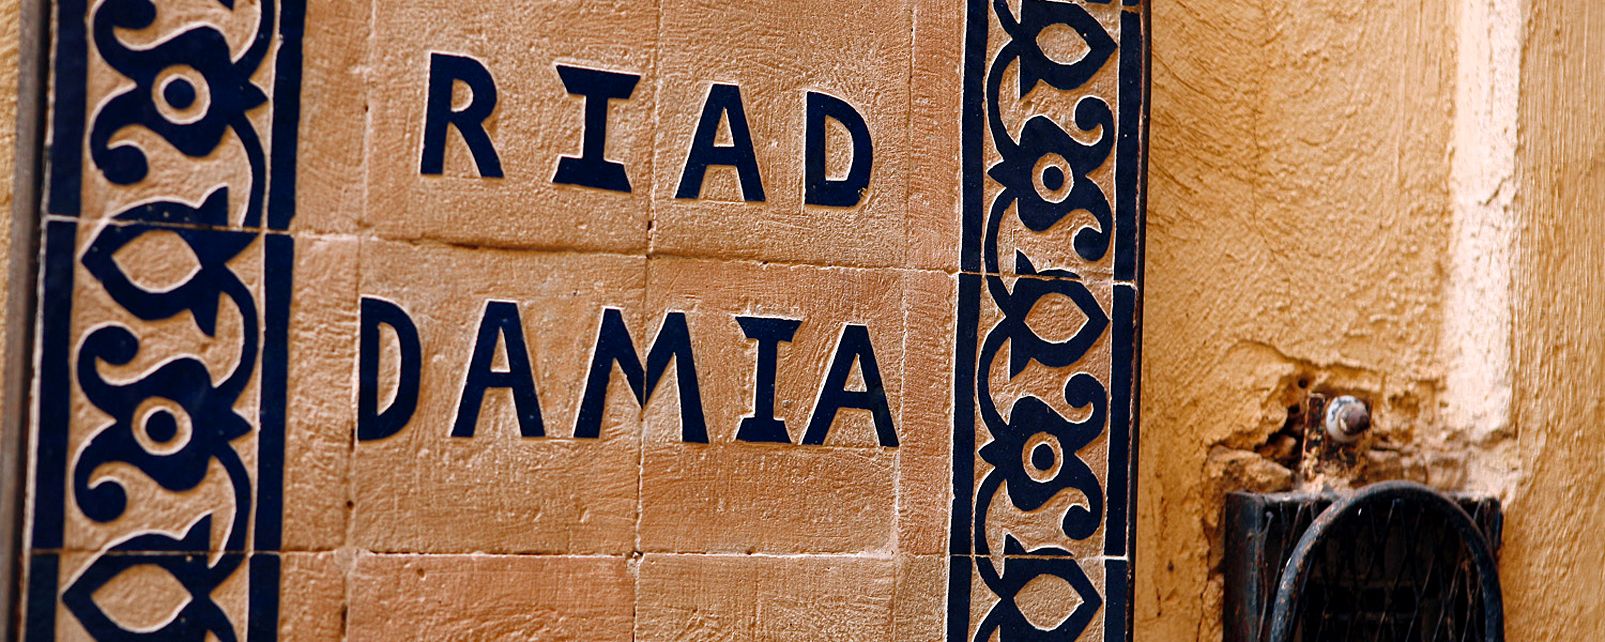 Hôtel Riad Damia